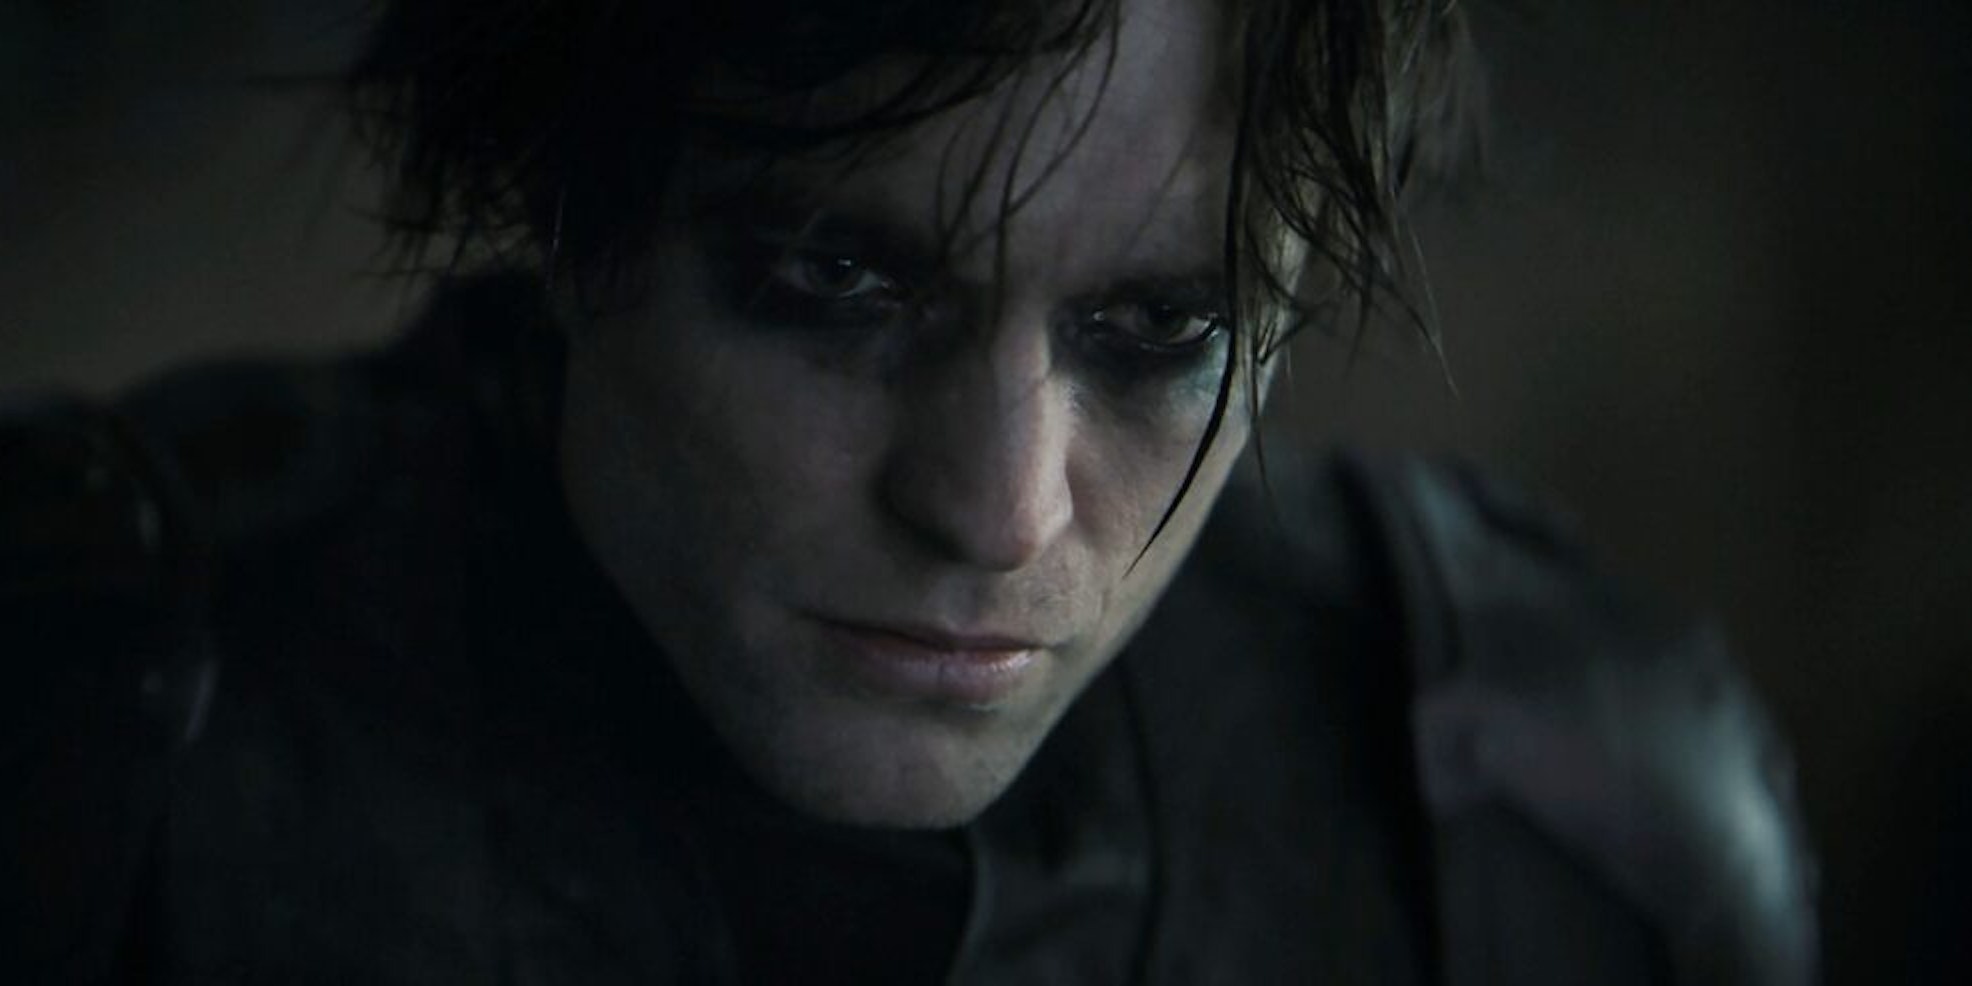 Robert Pattinson als Batman